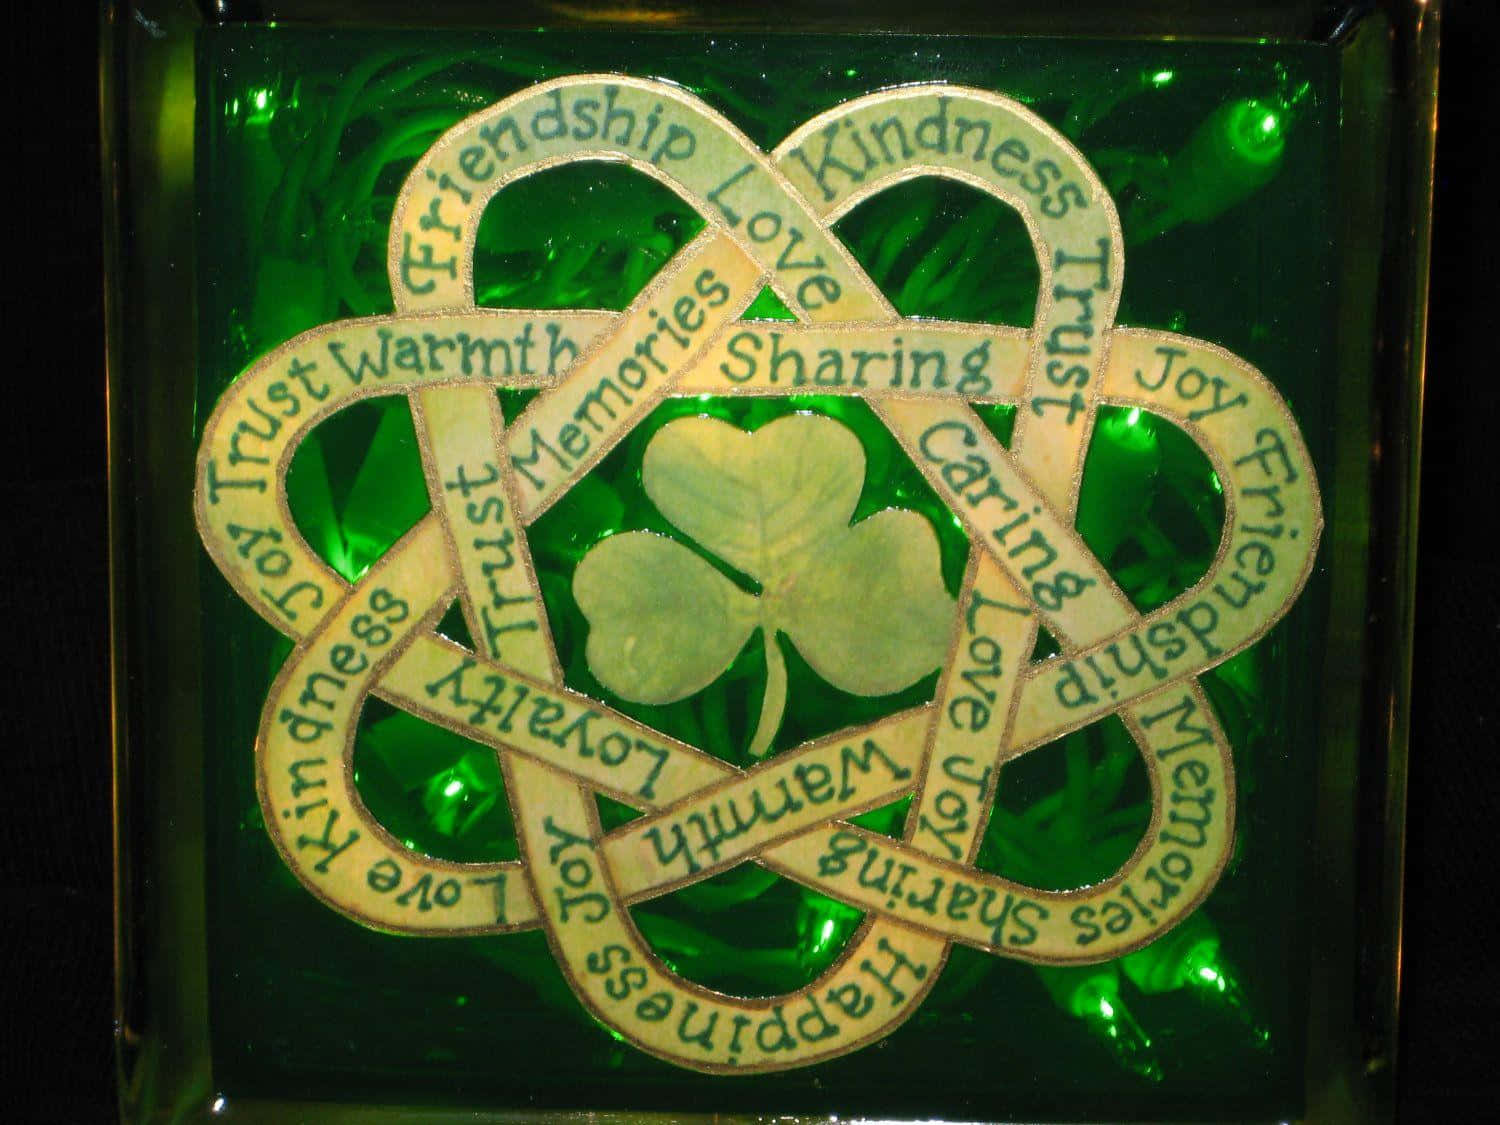 Enomfattande Keltisk Symbol Som Sträcker Sig Över De Öppna, Gröna Fälten.